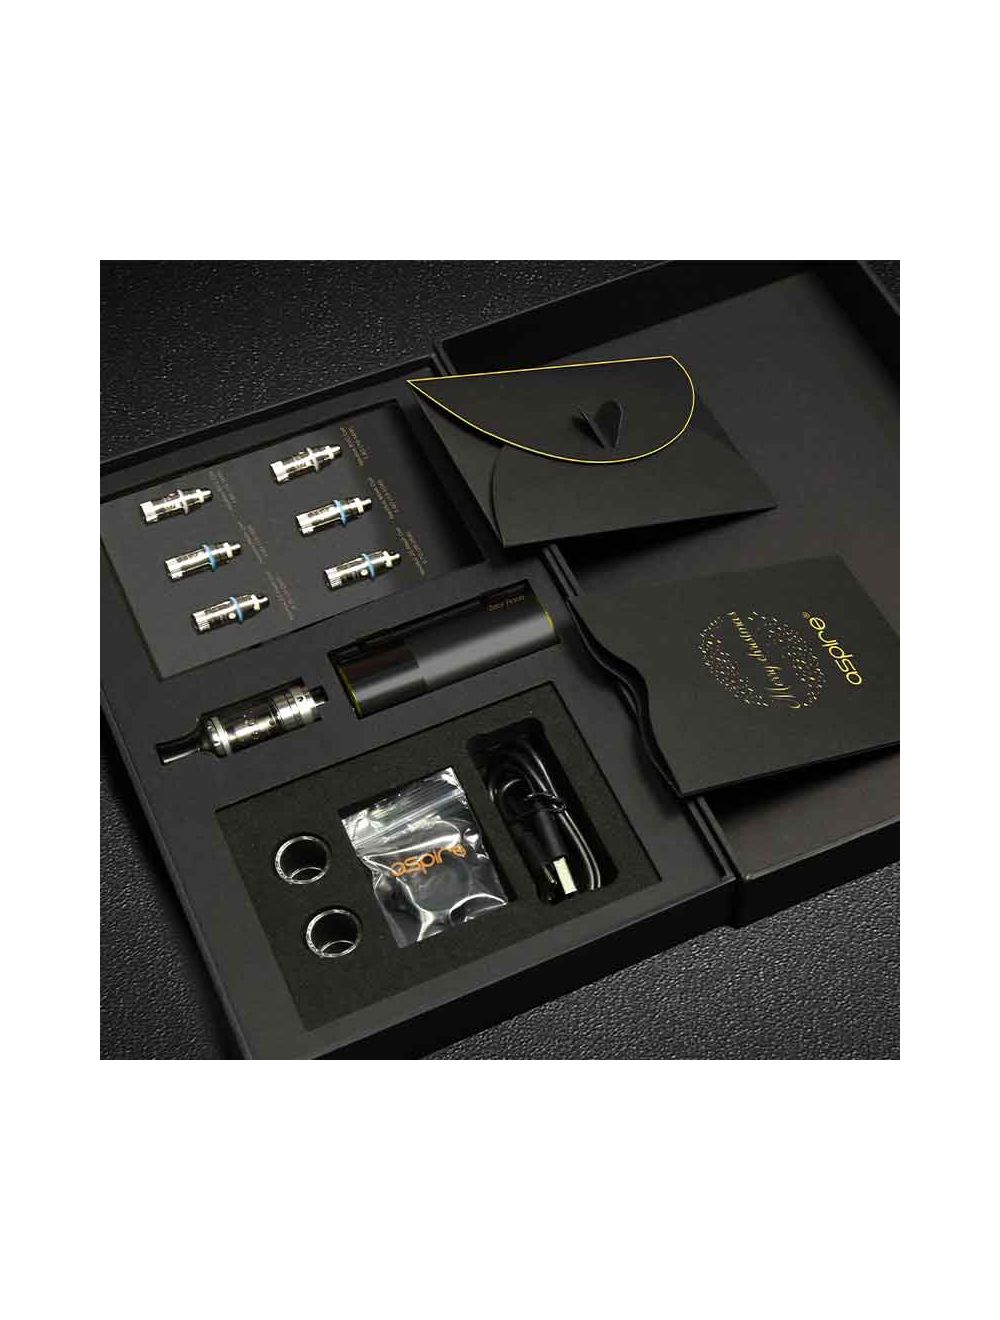 Aspire Zelos Nano Starter Kit Christmas Edition confezione